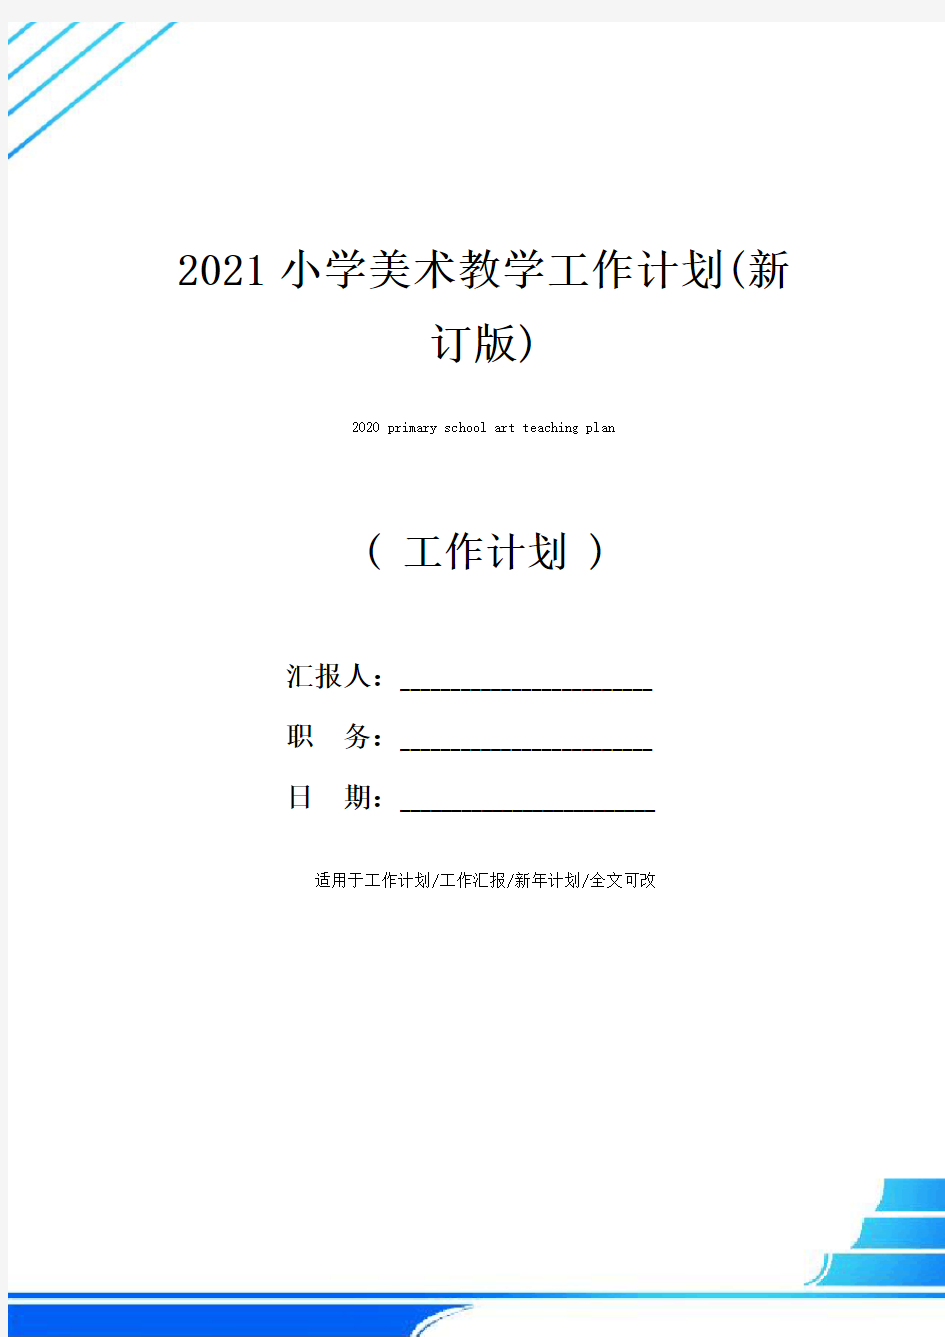 2021小学美术教学工作计划(新订版)